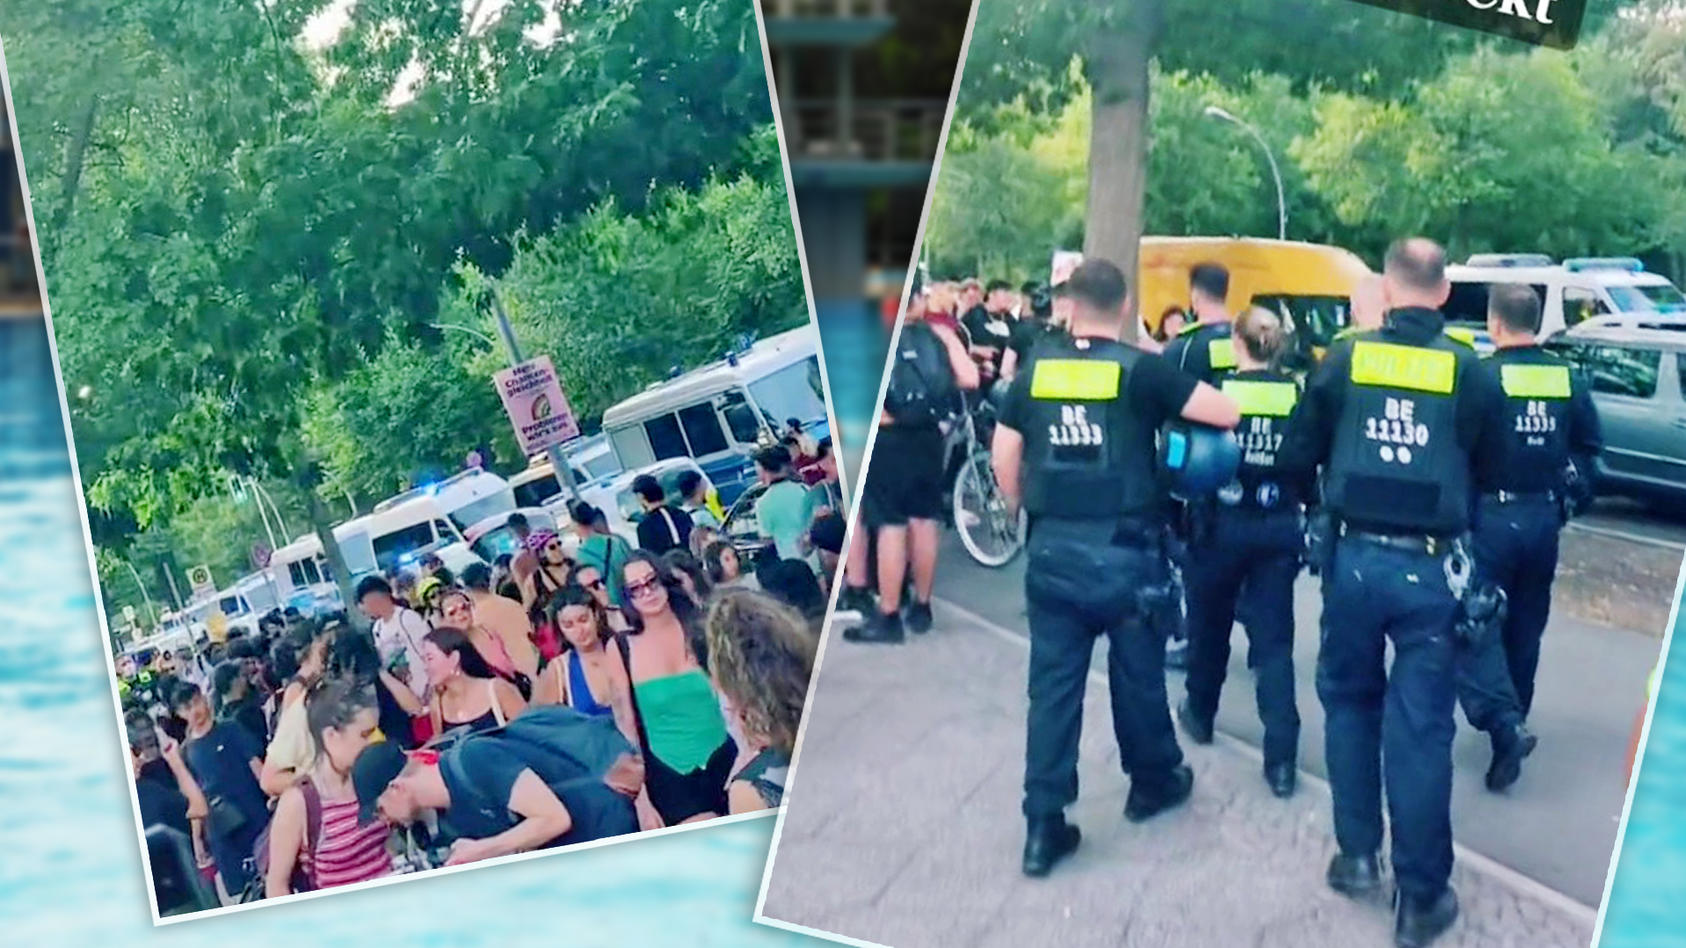 in-einem-berliner-schwimmbad-kam-es-zu-tumulten-und-einem-polizeieinsatz